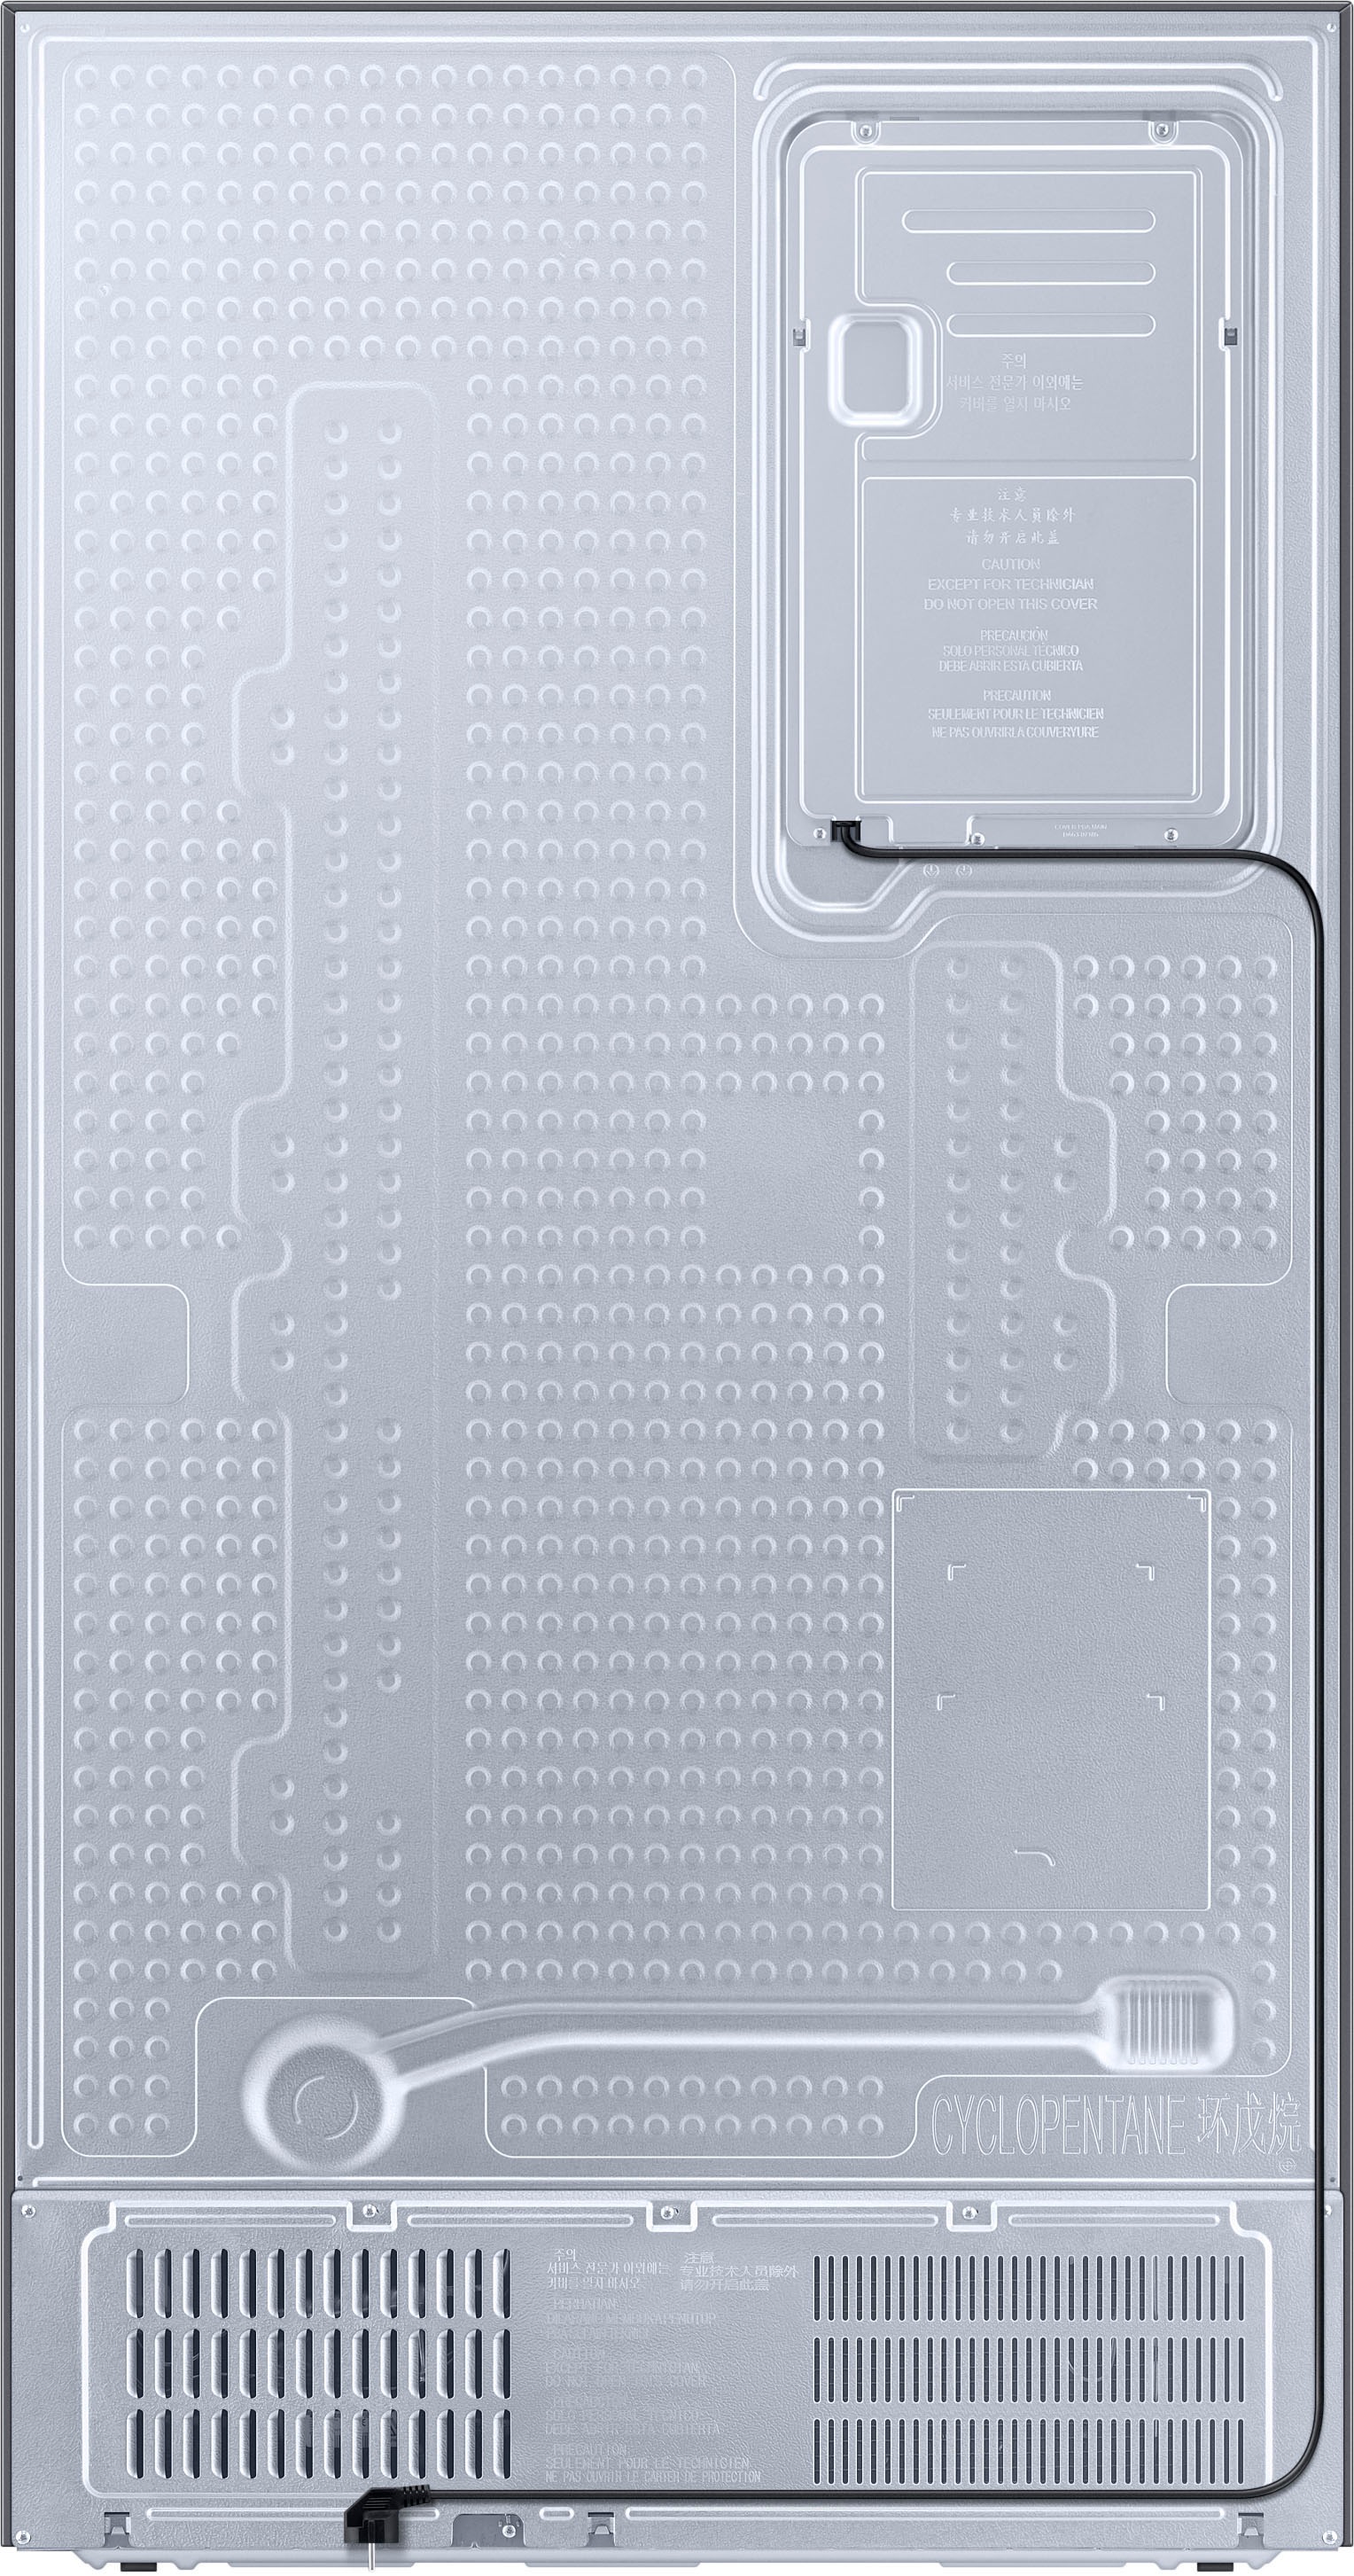 Samsung Side-by-Side, RS6KA8101S9, 178 cm hoch, 91,2 cm breit mit 3 Jahren  XXL Garantie